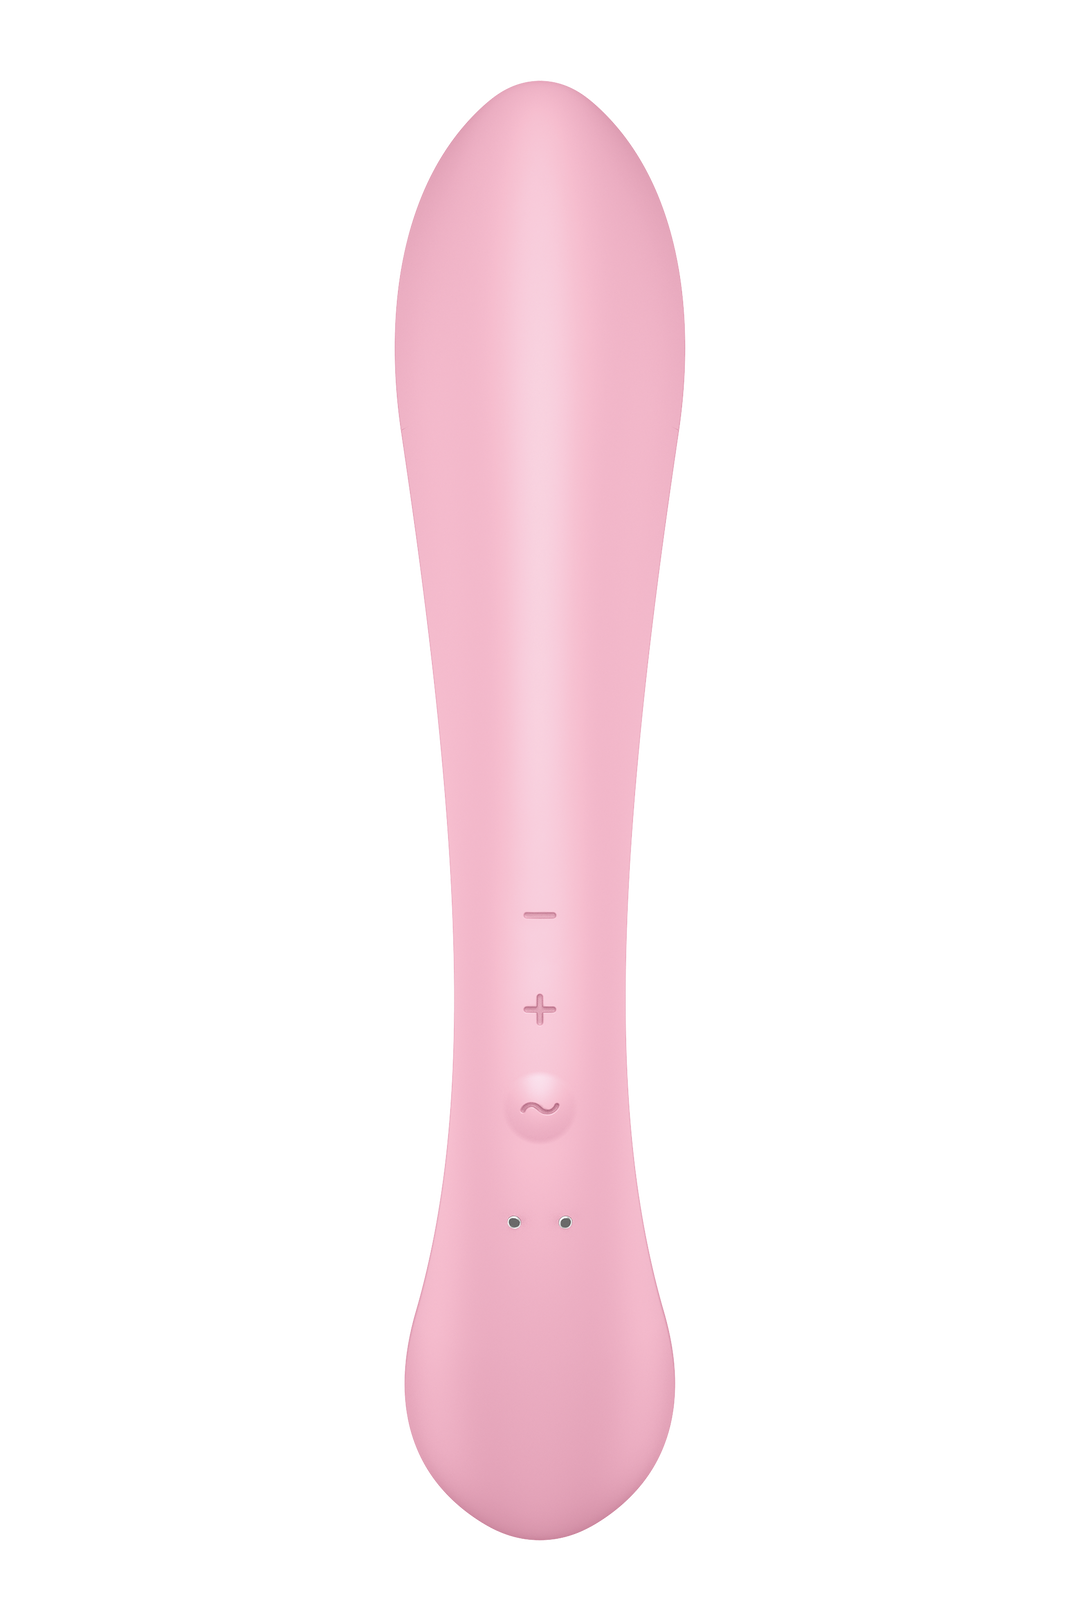 Vibratore Rabbbit  SexToys per Lei e per Stimolazione Clitoridea Realizzato in Puro Silicone Medicale con 3 Potenti Motori e 12 Differenti Vibrazioni